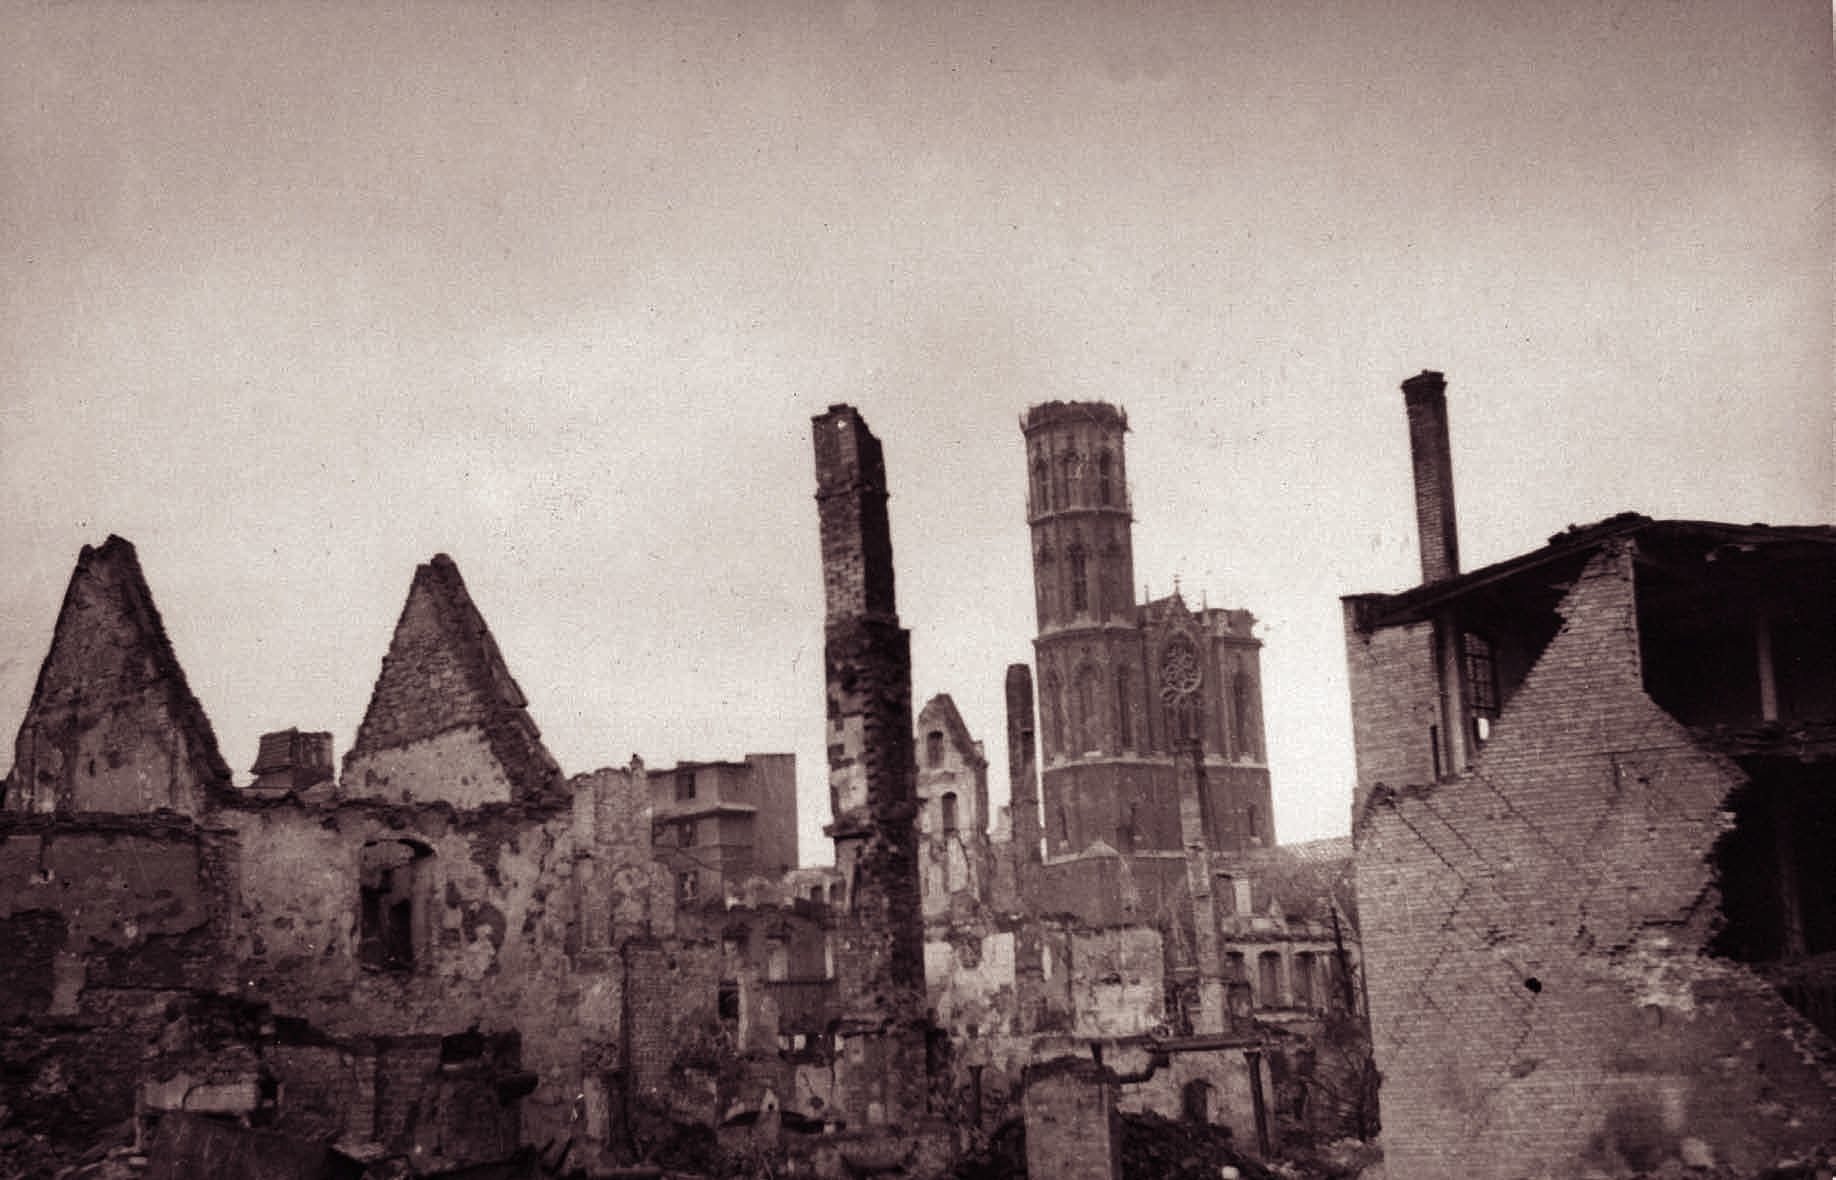 Die Kemenate Hagenbrücke 5 in der zerstörten Stadt 1945. Blick von Nordosten, im Hintergrund die beschädigte Kirche St. Andreas. (Zoom on click)